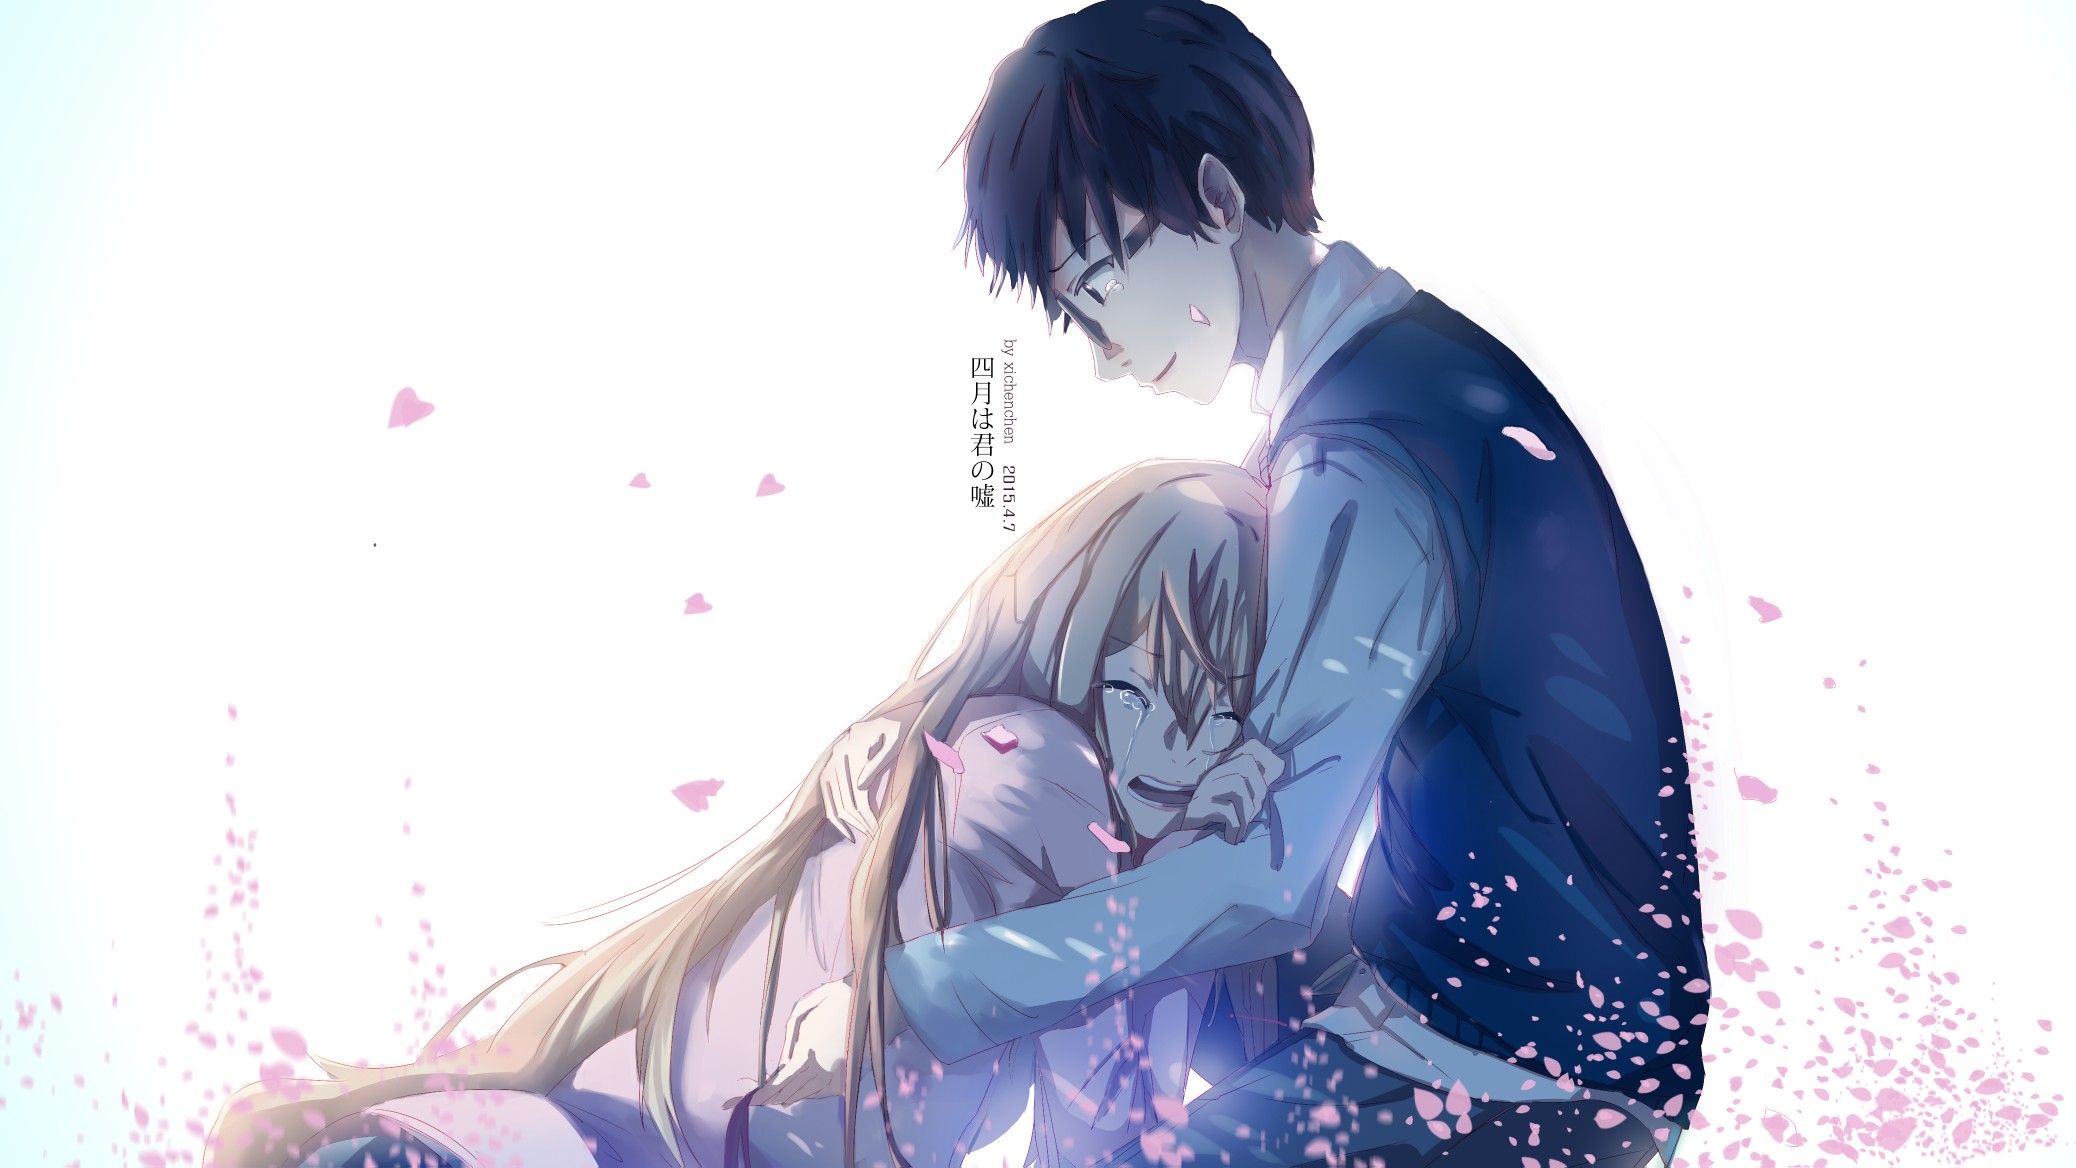 Hình ảnh anime cặp đôi chia tay, người trong lòng đau đớn còn người lại phải tiếp tục đối diện với cuộc sống. Hãy đón xem để cảm nhận được sự chia lìa và đau đớn trong tình yêu.